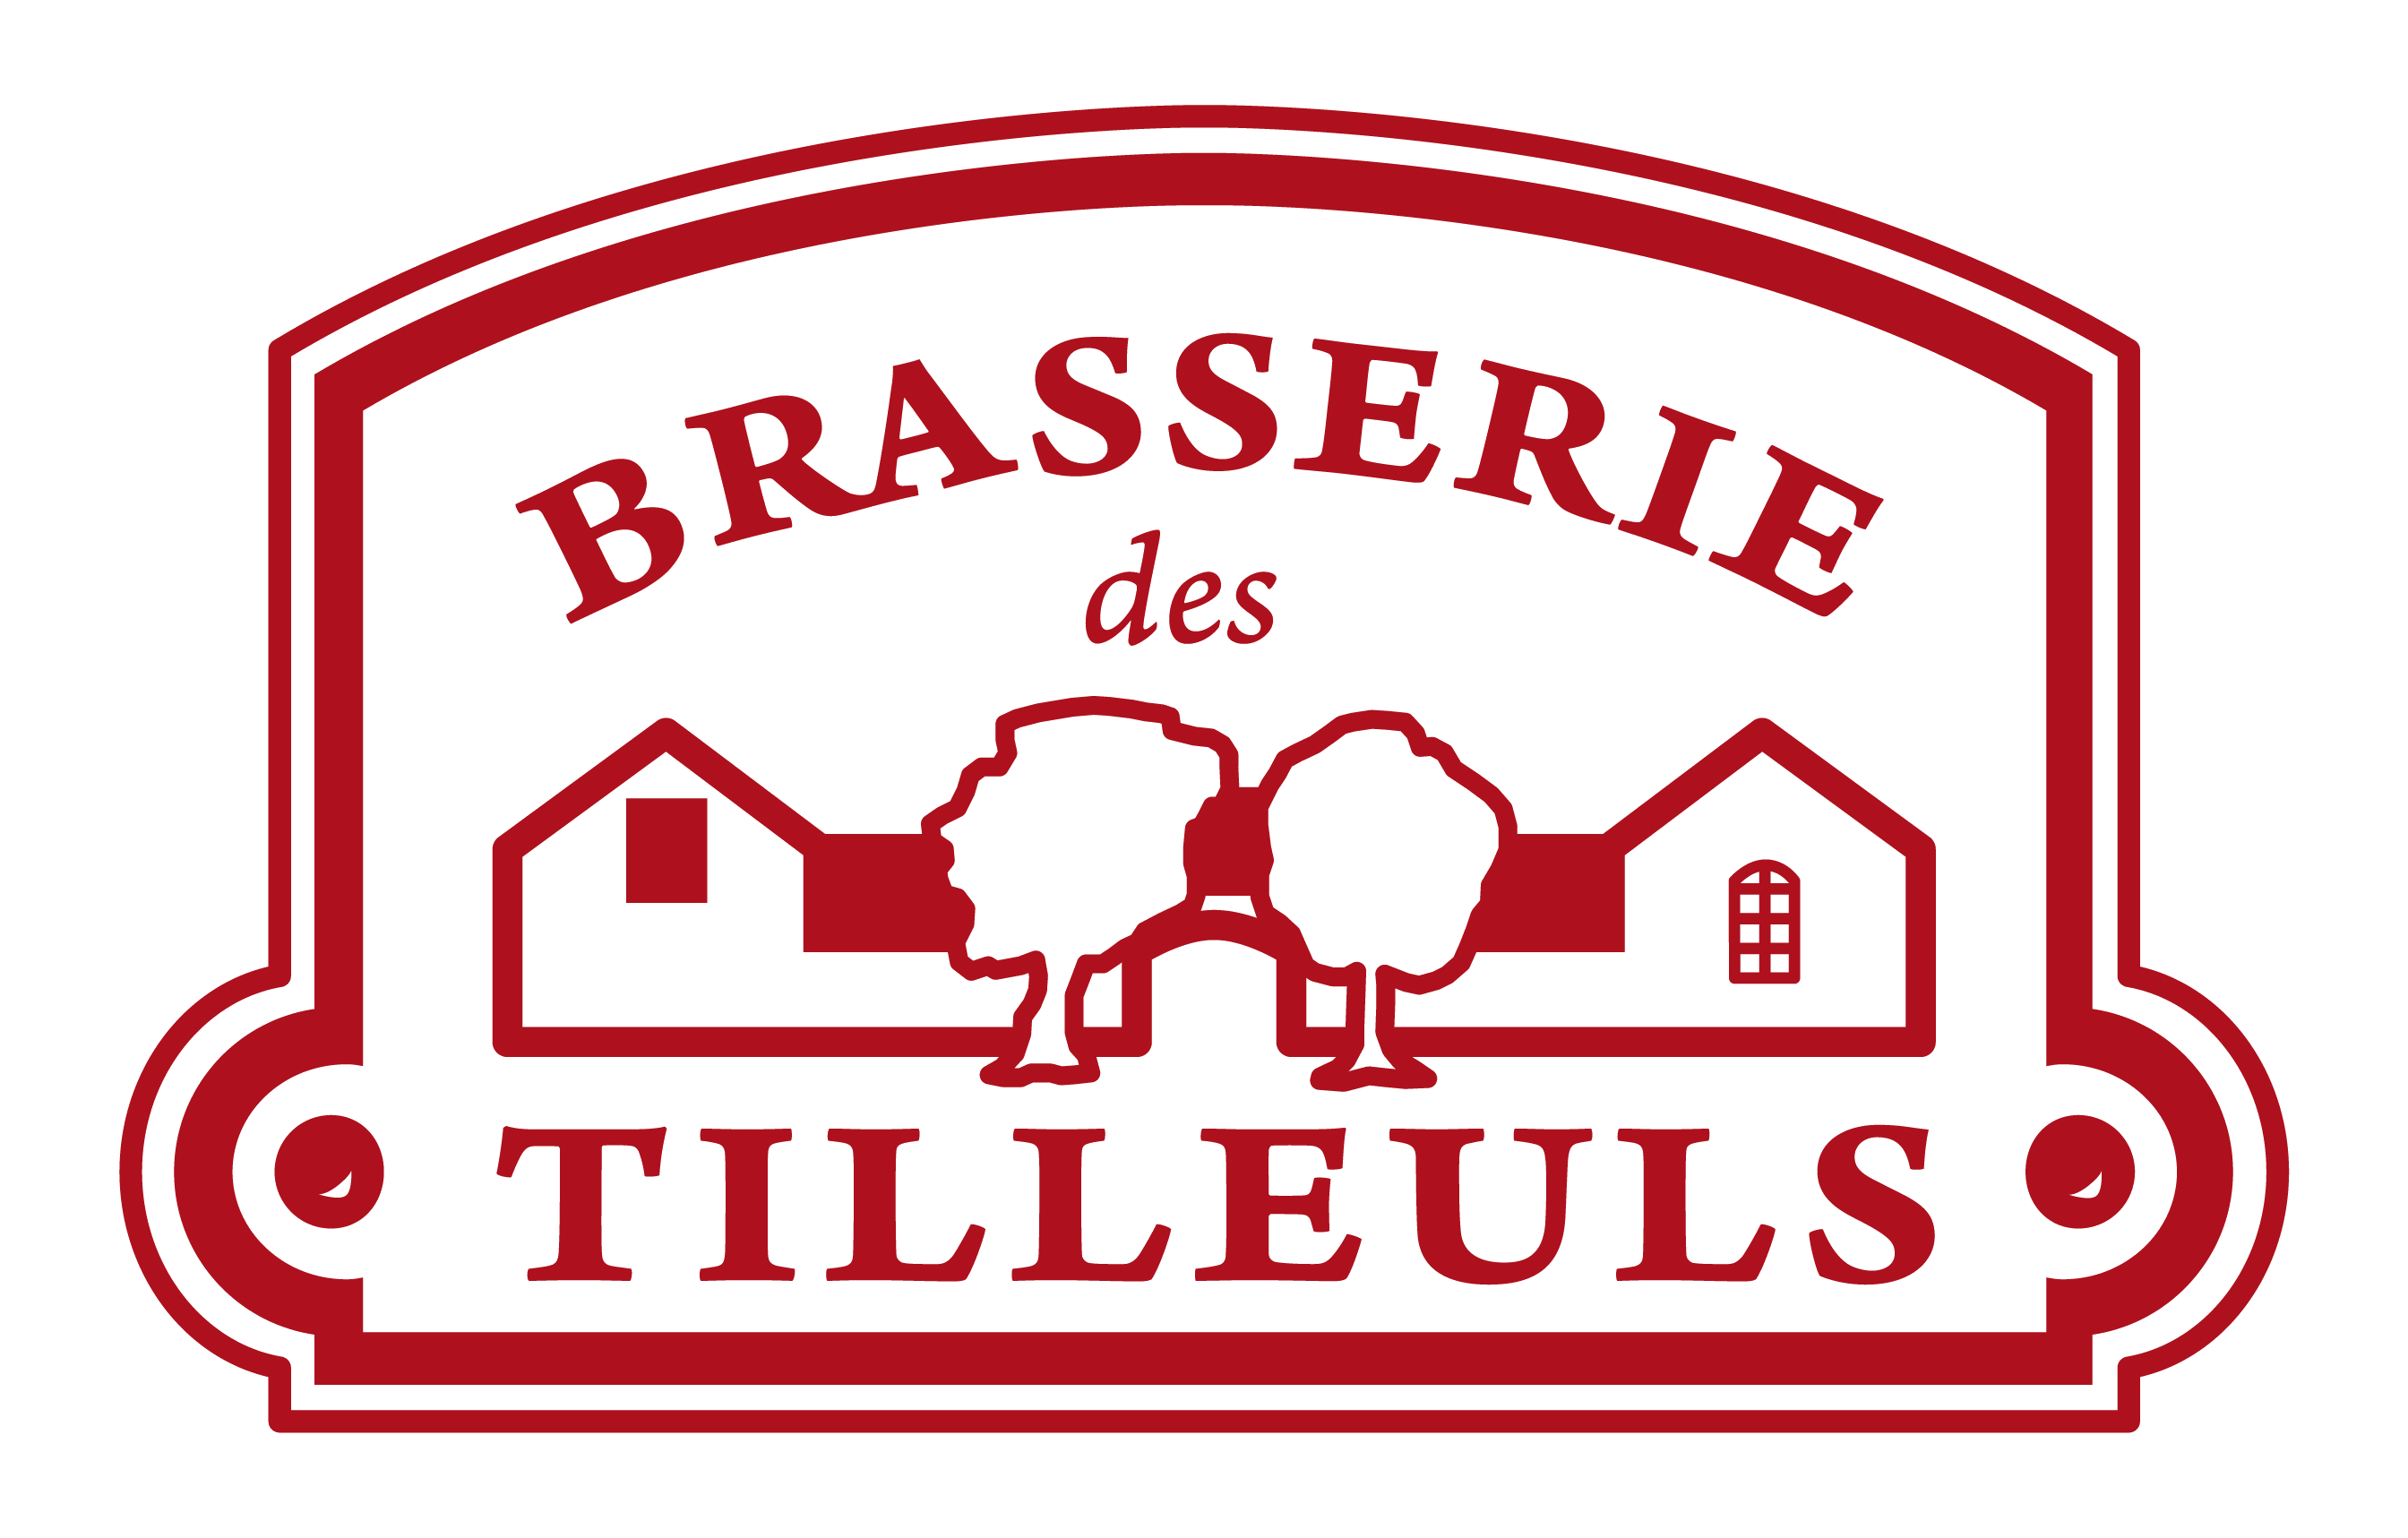 La Brasserie des Tilleuls